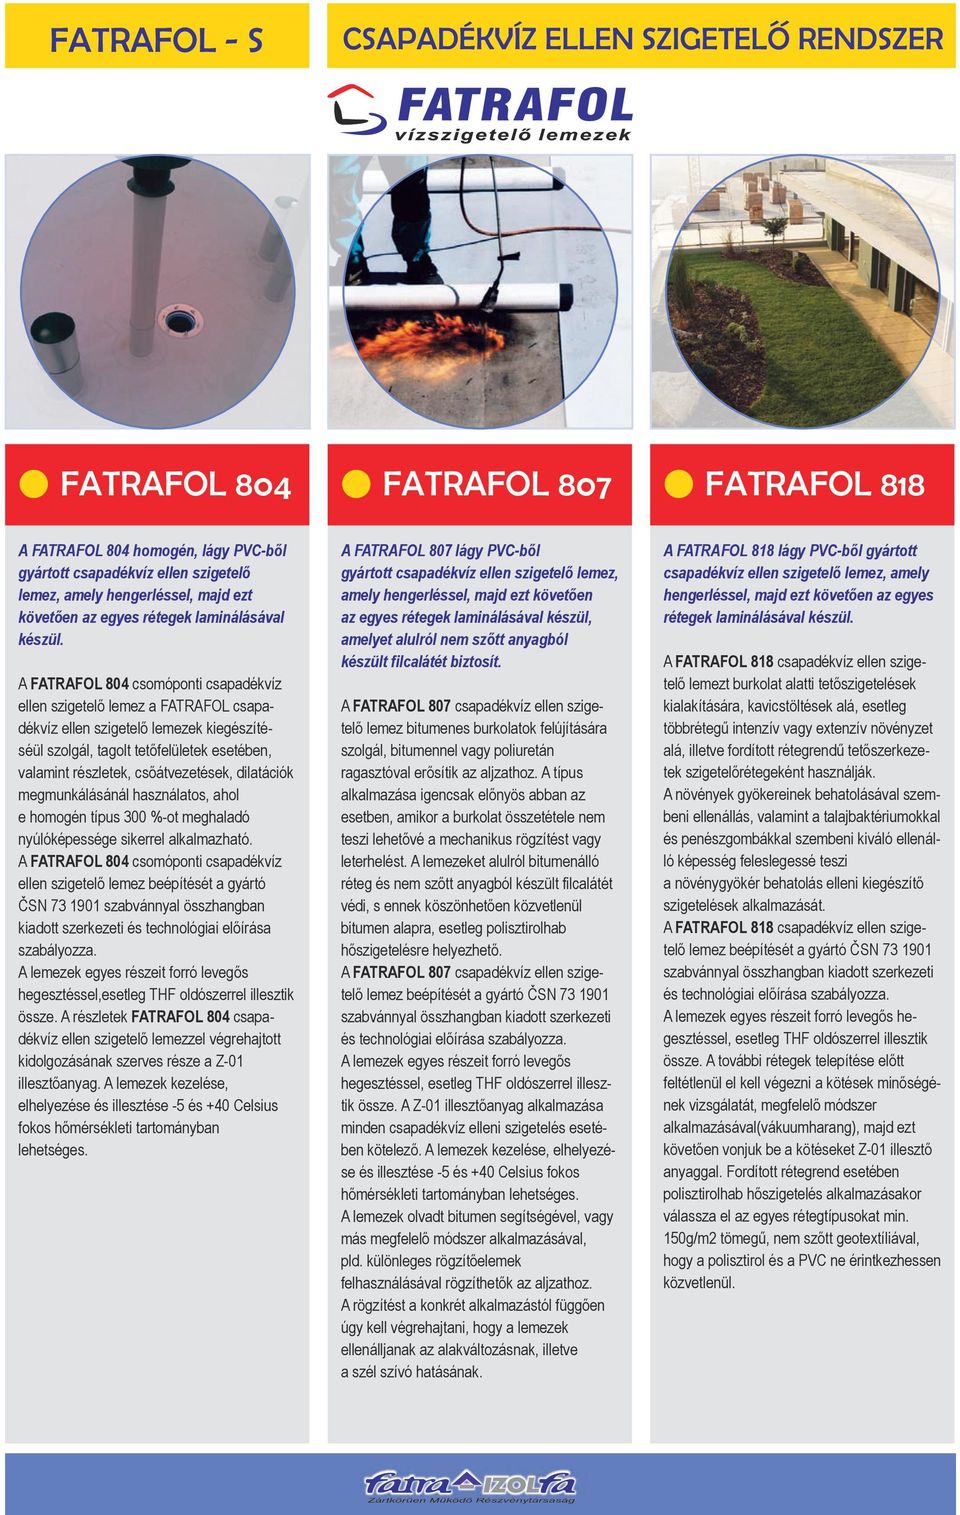 A FATRAFOL 804 csomóponti csapadékvíz ellen szigetelő lemez a FATRAFOL csapadékvíz ellen szigetelő lemezek kiegészítéséül szolgál, tagolt tetőfelületek esetében, valamint részletek, csőátvezetések,